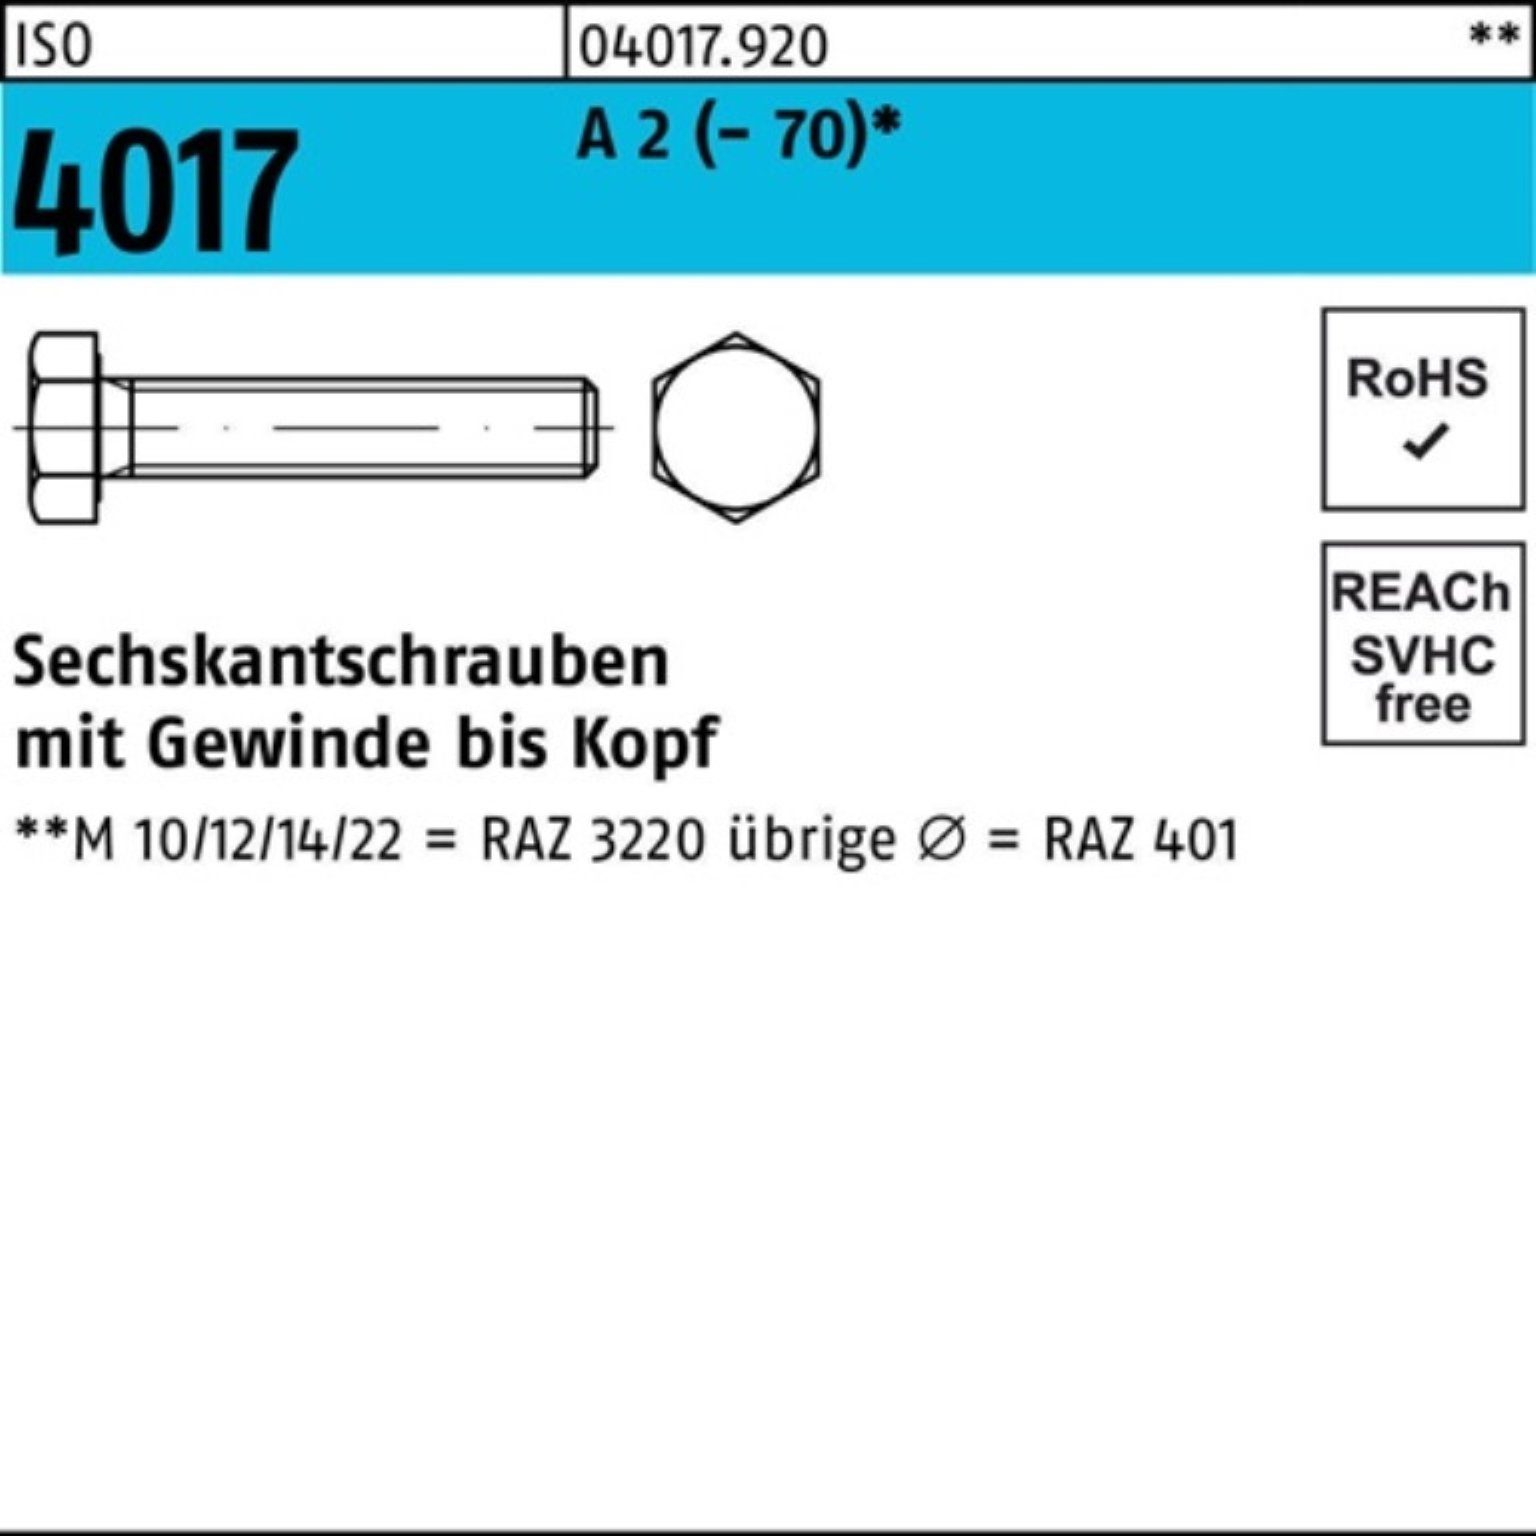 Bufab Sechskantschraube 100er Pack Sechskantschraube ISO 4017 VG M8x 180 A 2 (70) 50 Stück